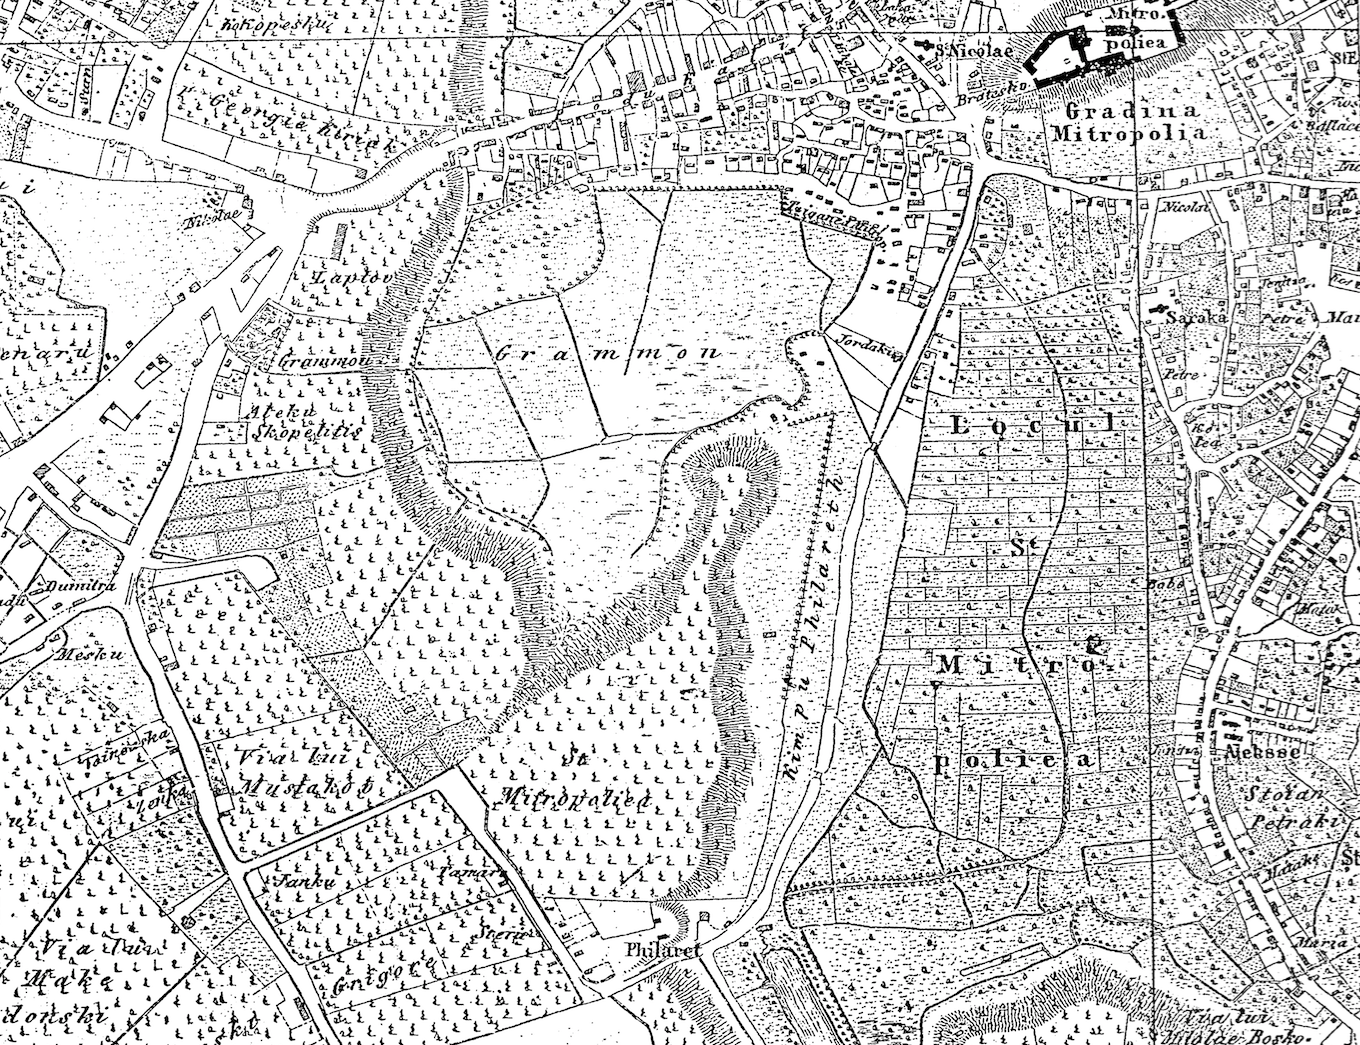 Kimpu Philareth Sursa: Planul maiorului Rudolph von Borroczyn, versiunea din 1852